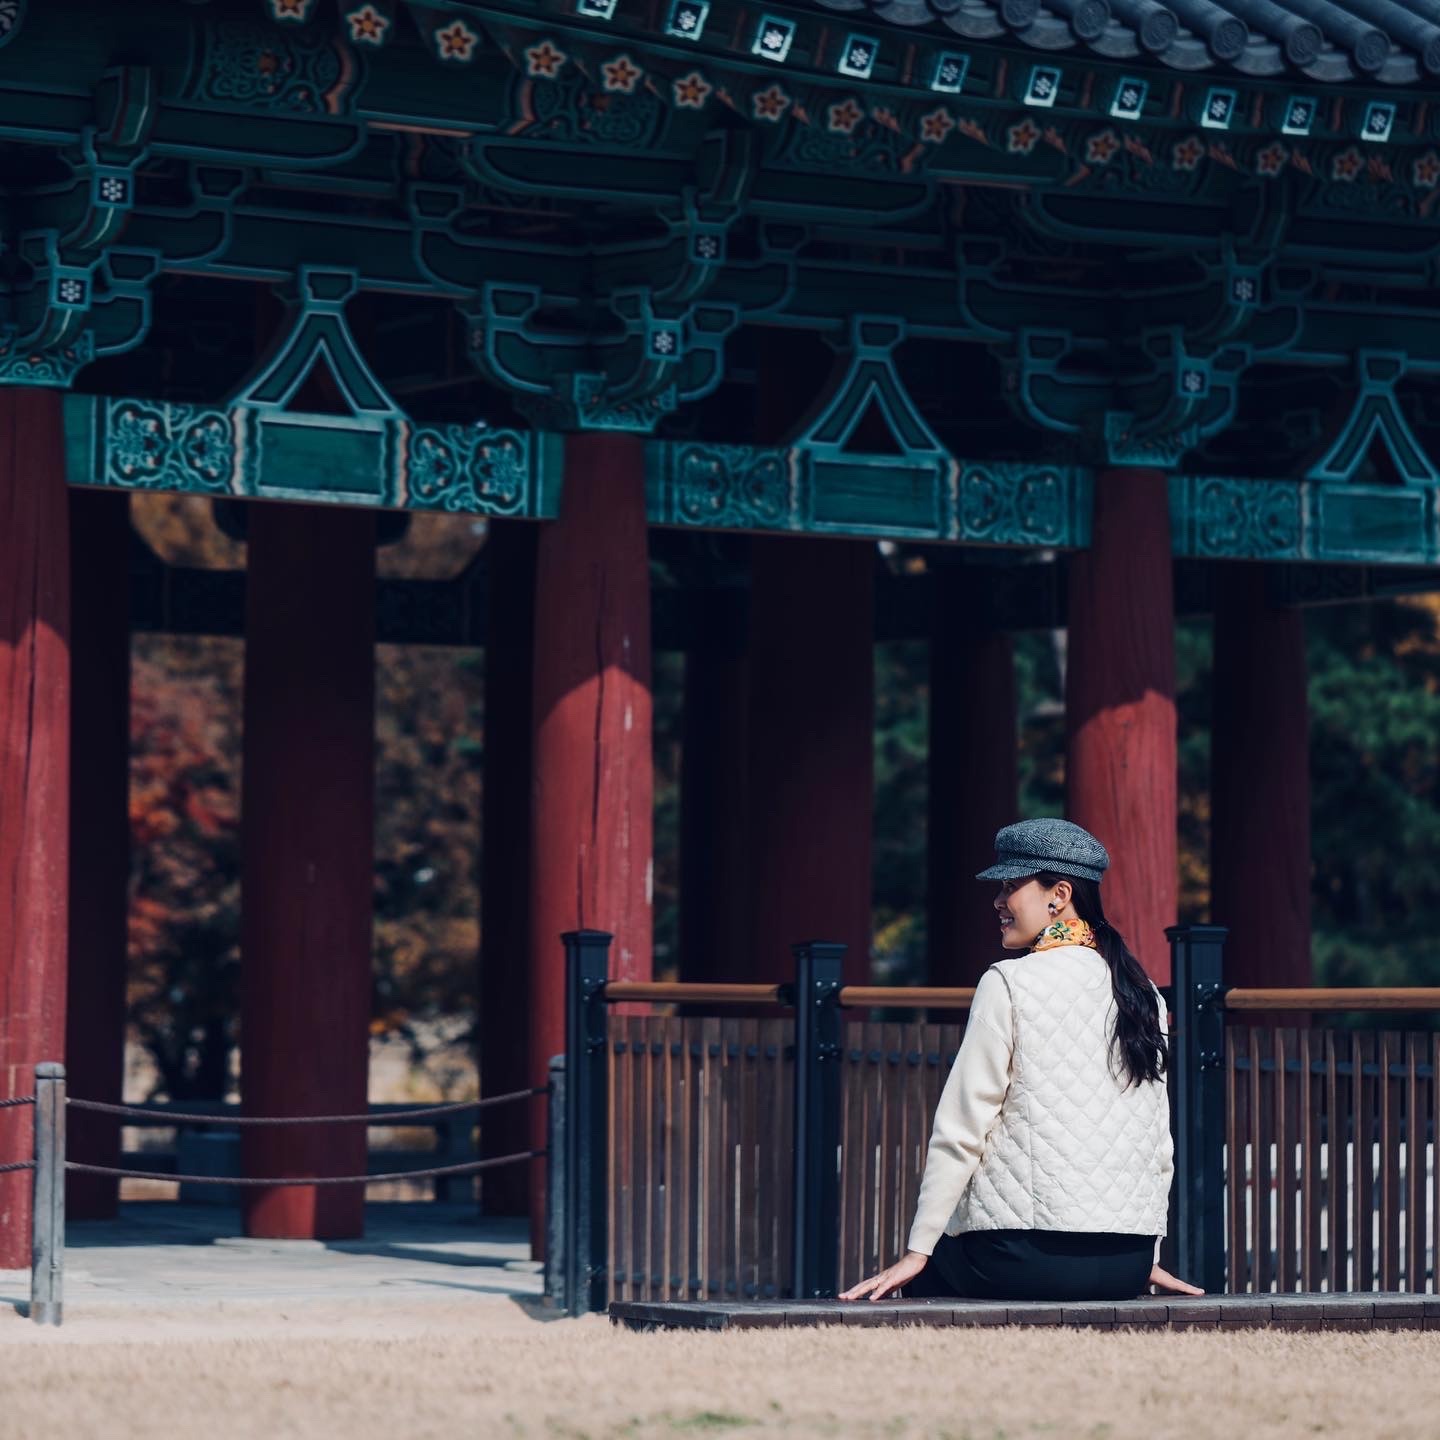 Kinh nghiệm đi du lịch Hàn Quốc mùa lá đỏ lãng mạn - 6